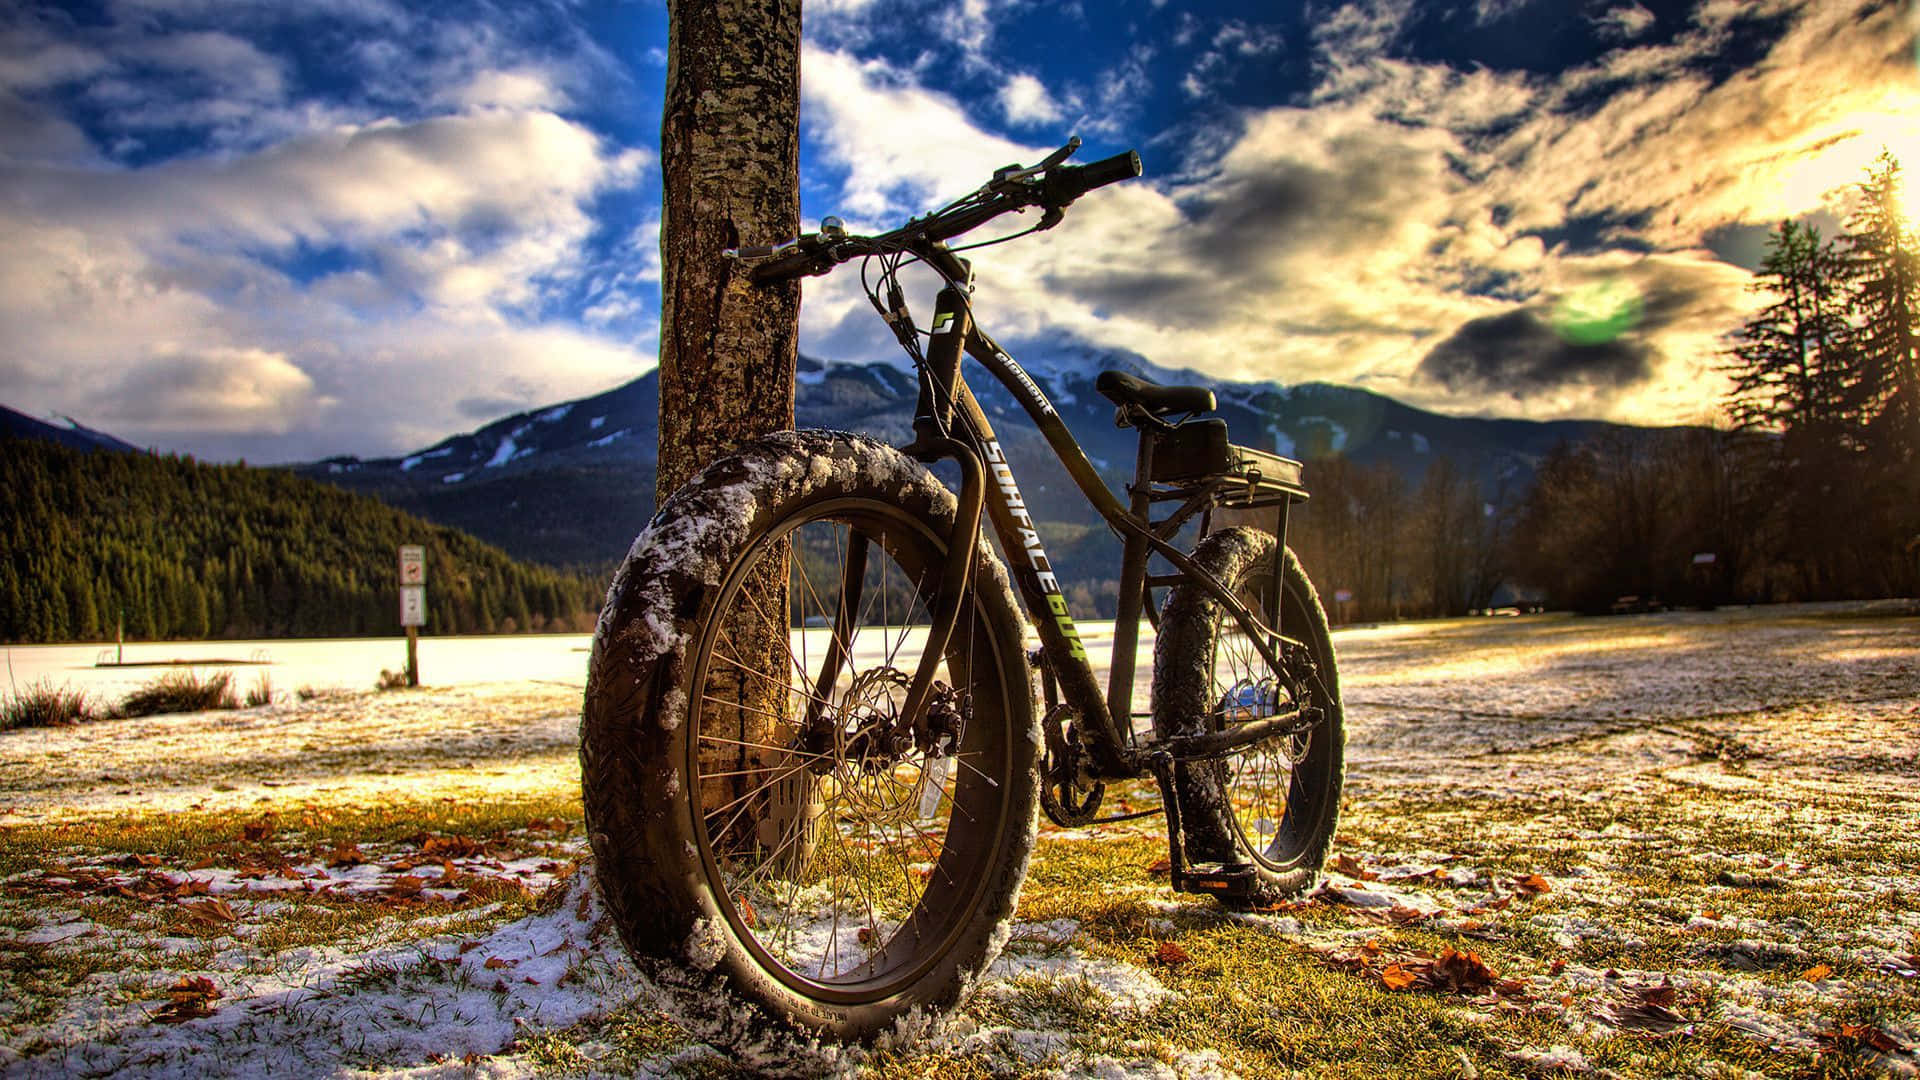 Bicicletade Montaña Specialized De Cuadro Ancho En Nieve Derretida. Fondo de pantalla